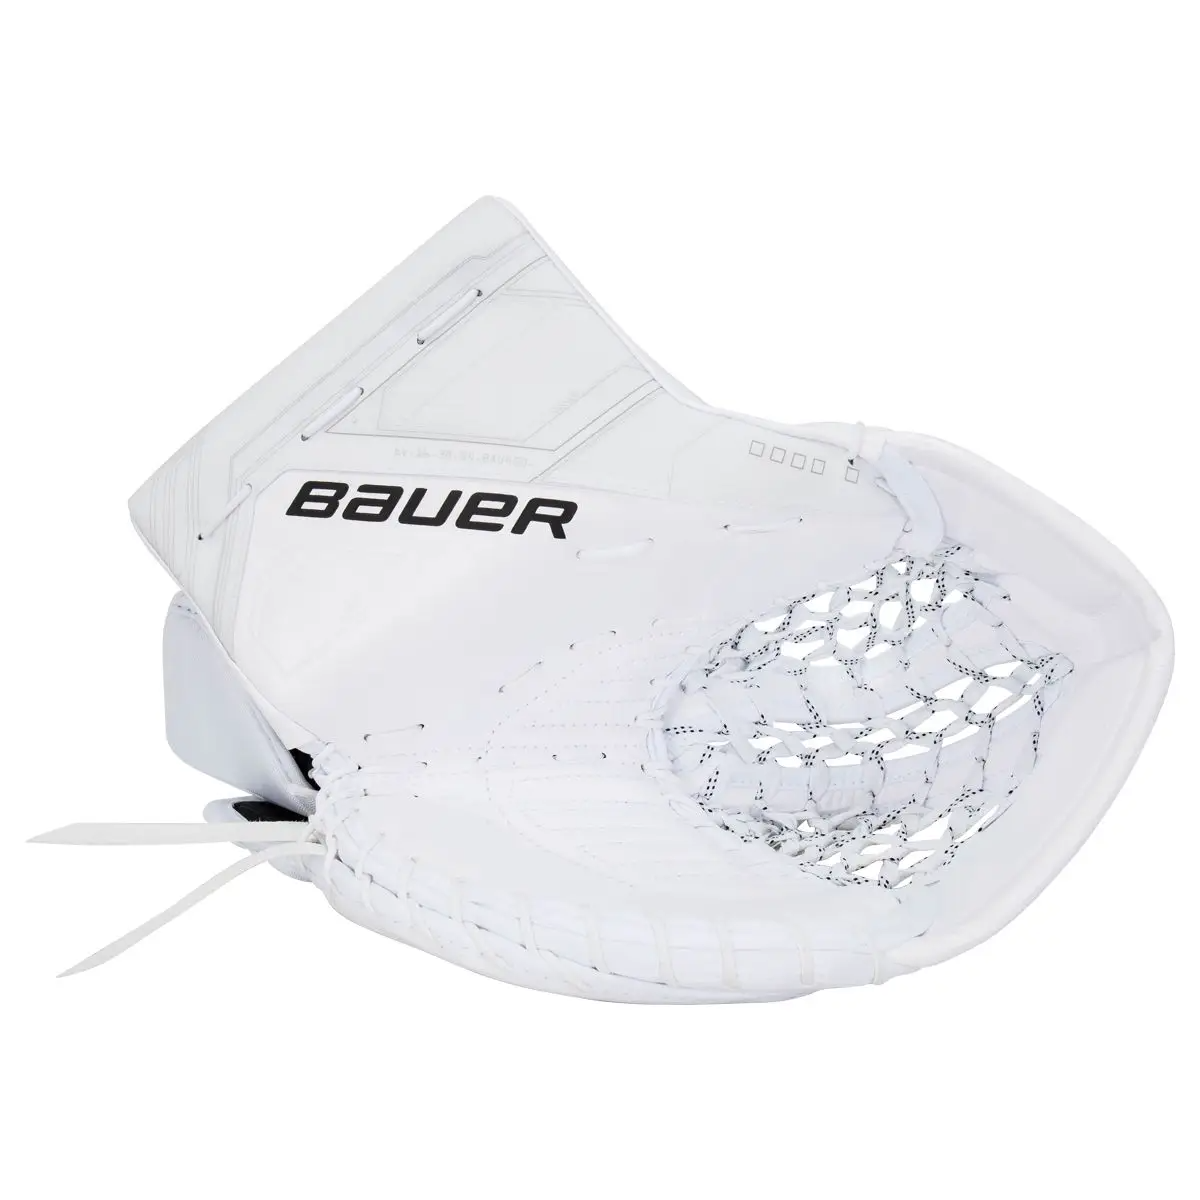 BAUER Supreme Mach Senior Goalie Glove